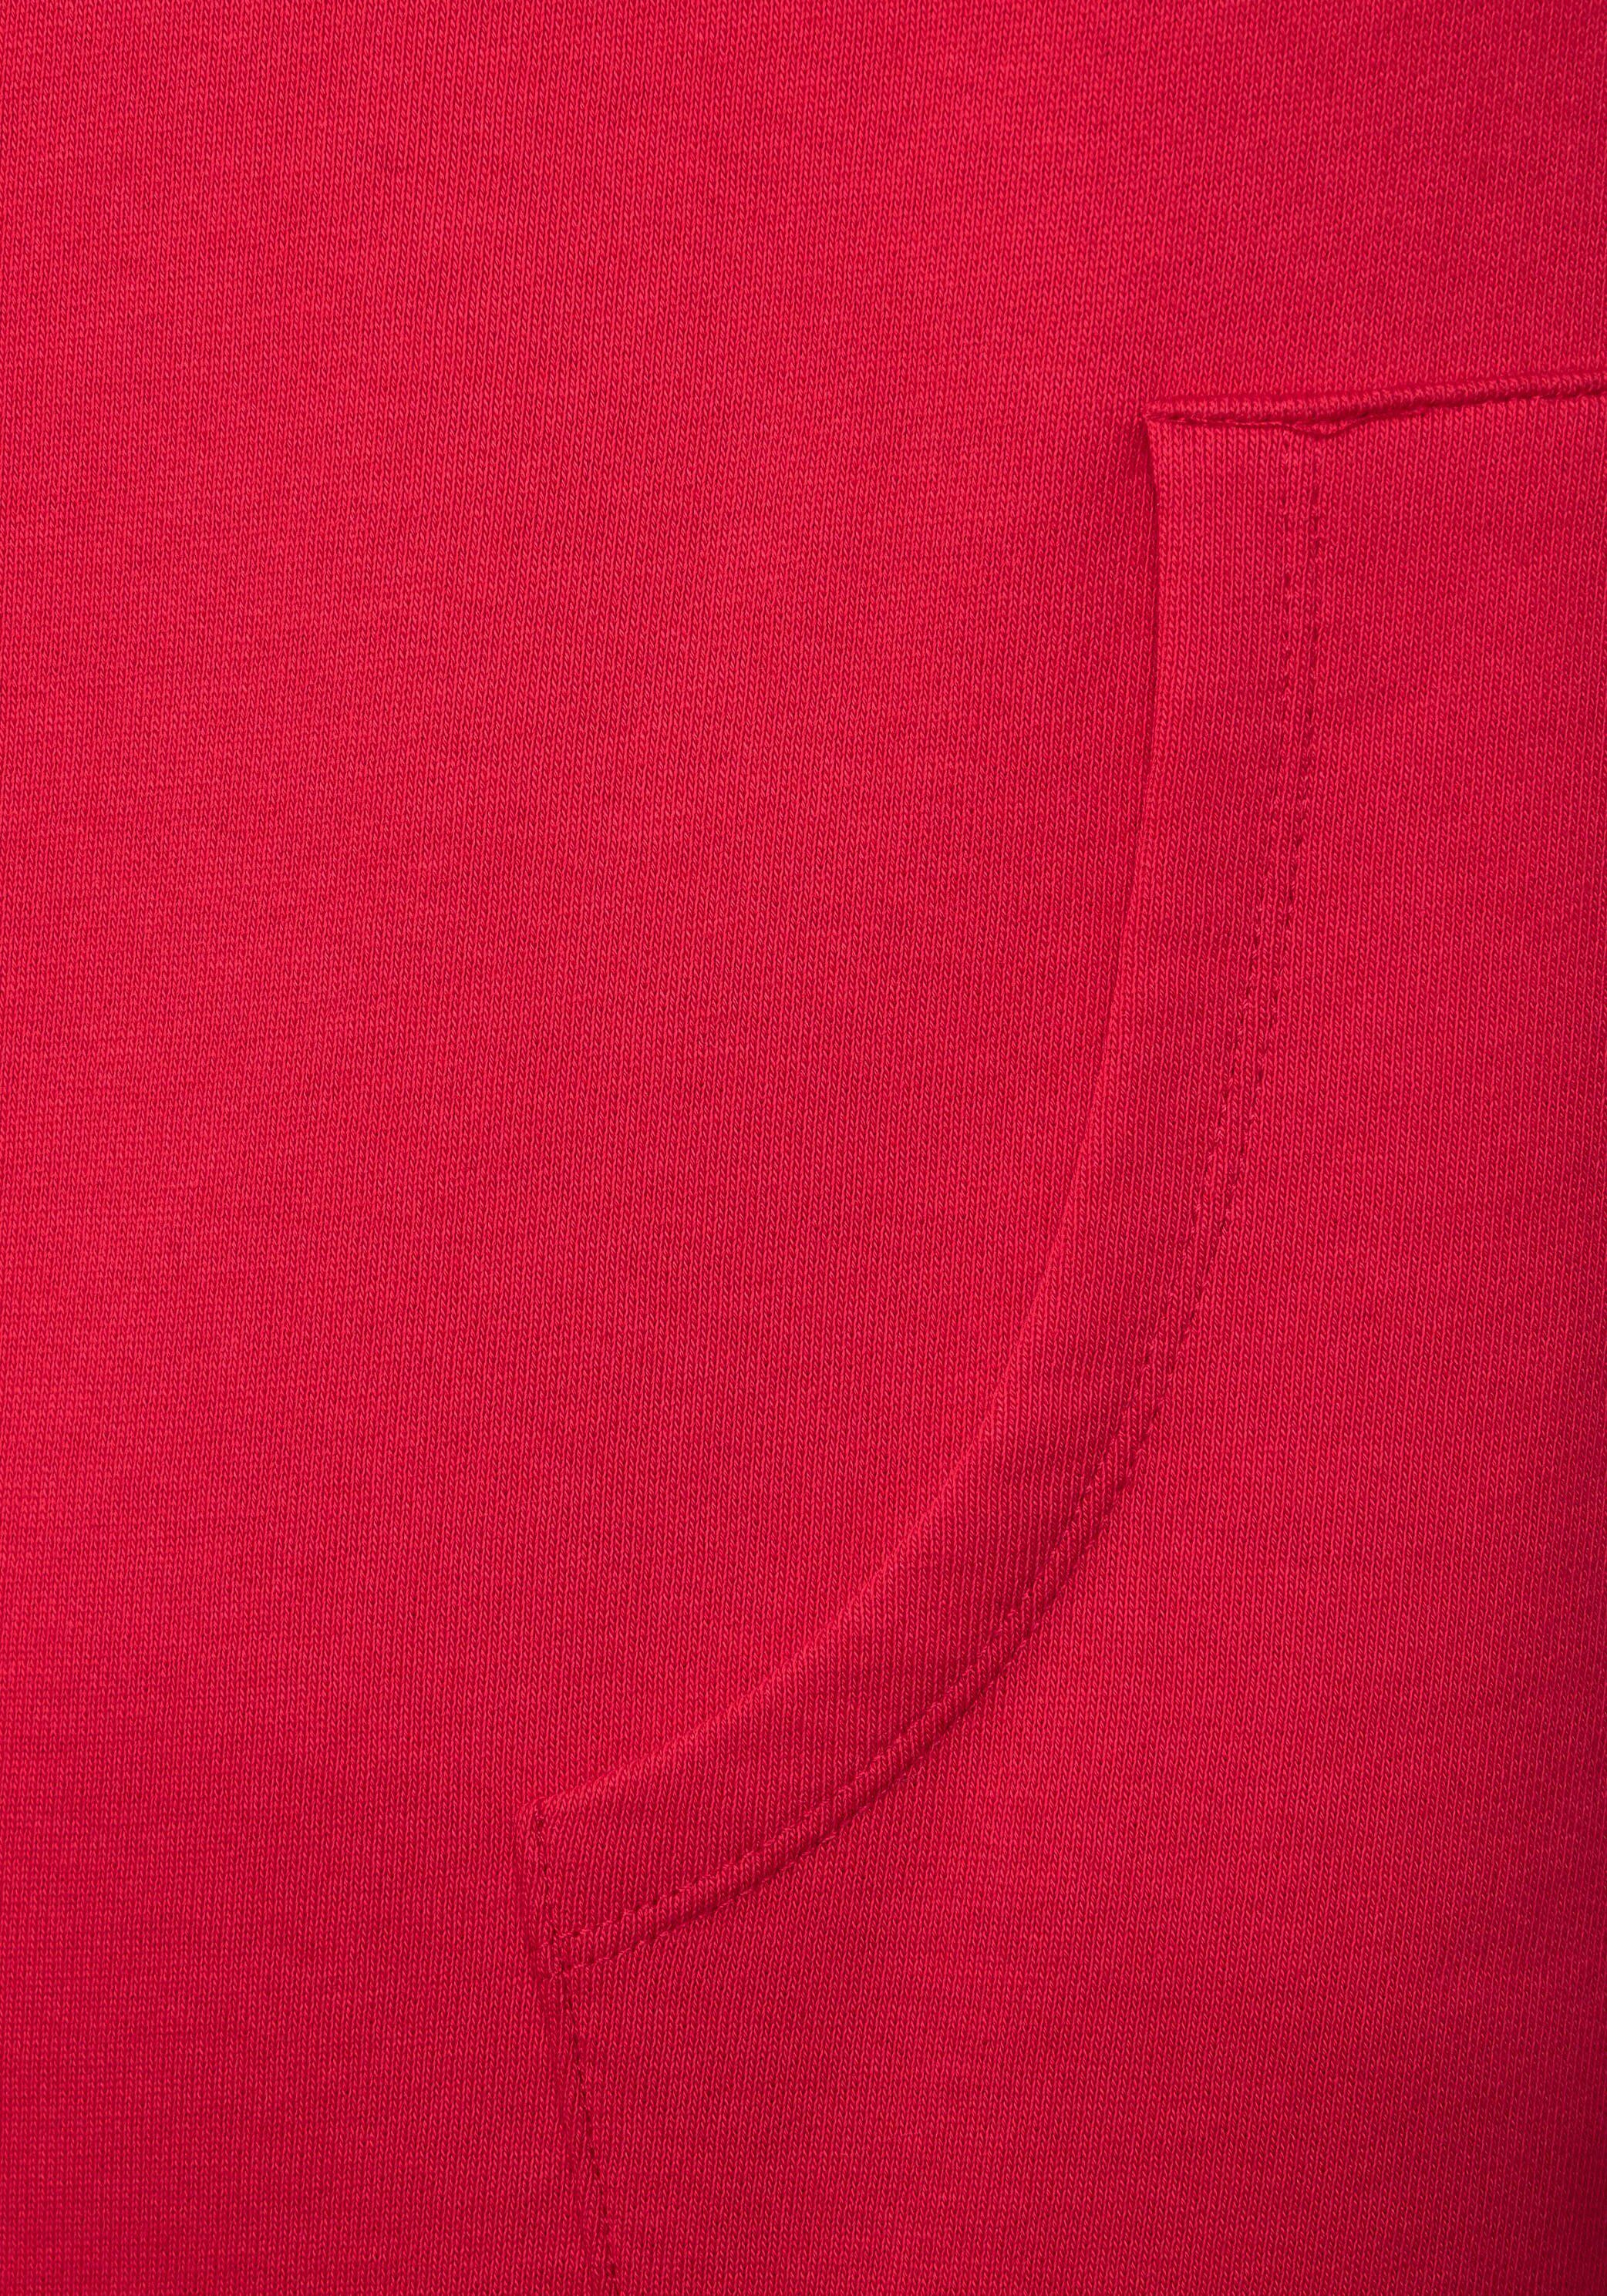 Ärmelbündchen Jerseykleid Cecil sowie red casual Abschlussbund mit